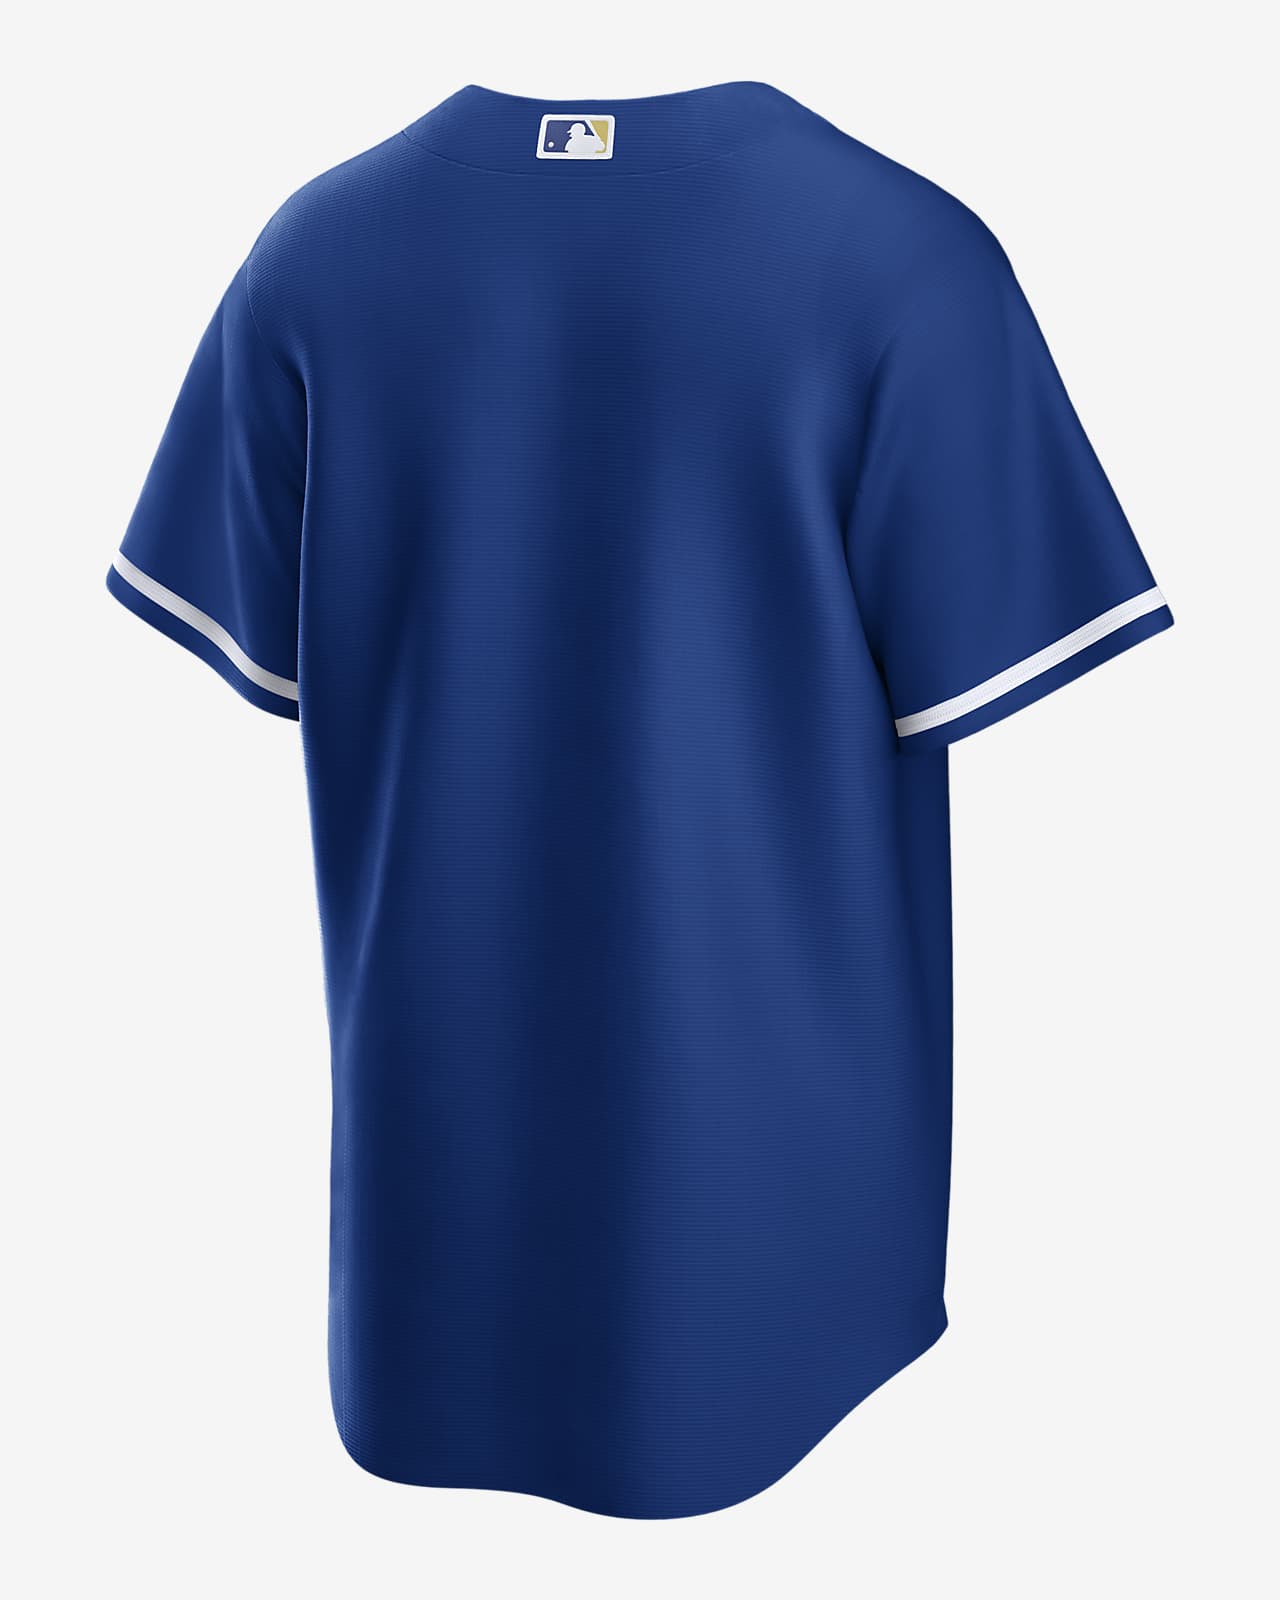 kc royals blue jersey